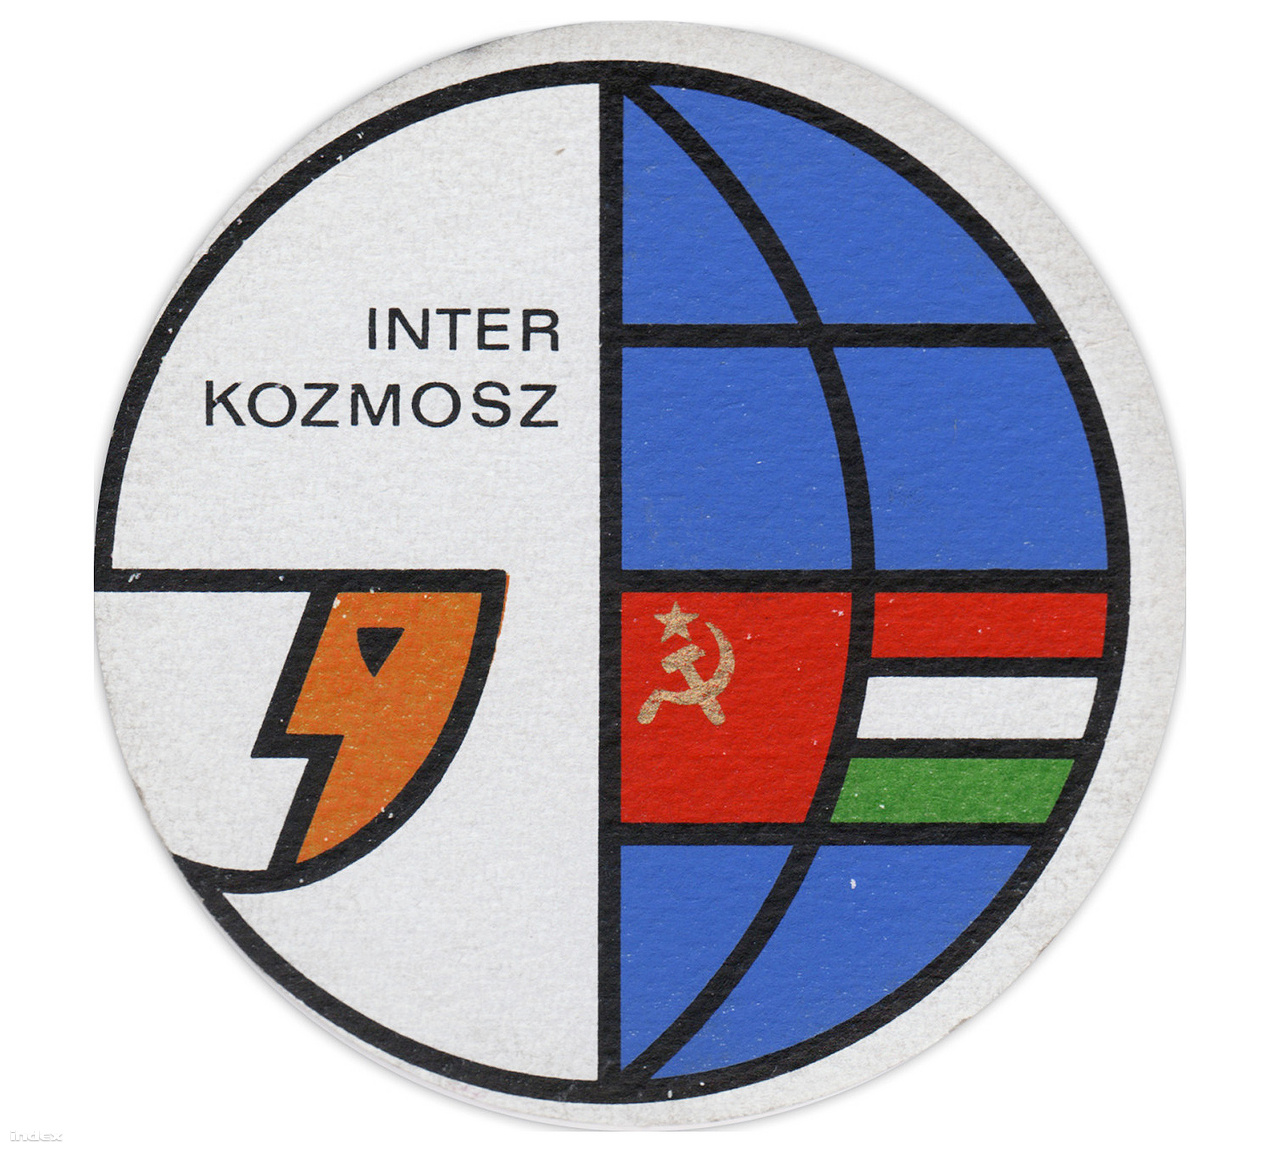 Interkozmosz söralátét a szovjet-magyar közös űrrepülés jegyében. Za zdarovje!